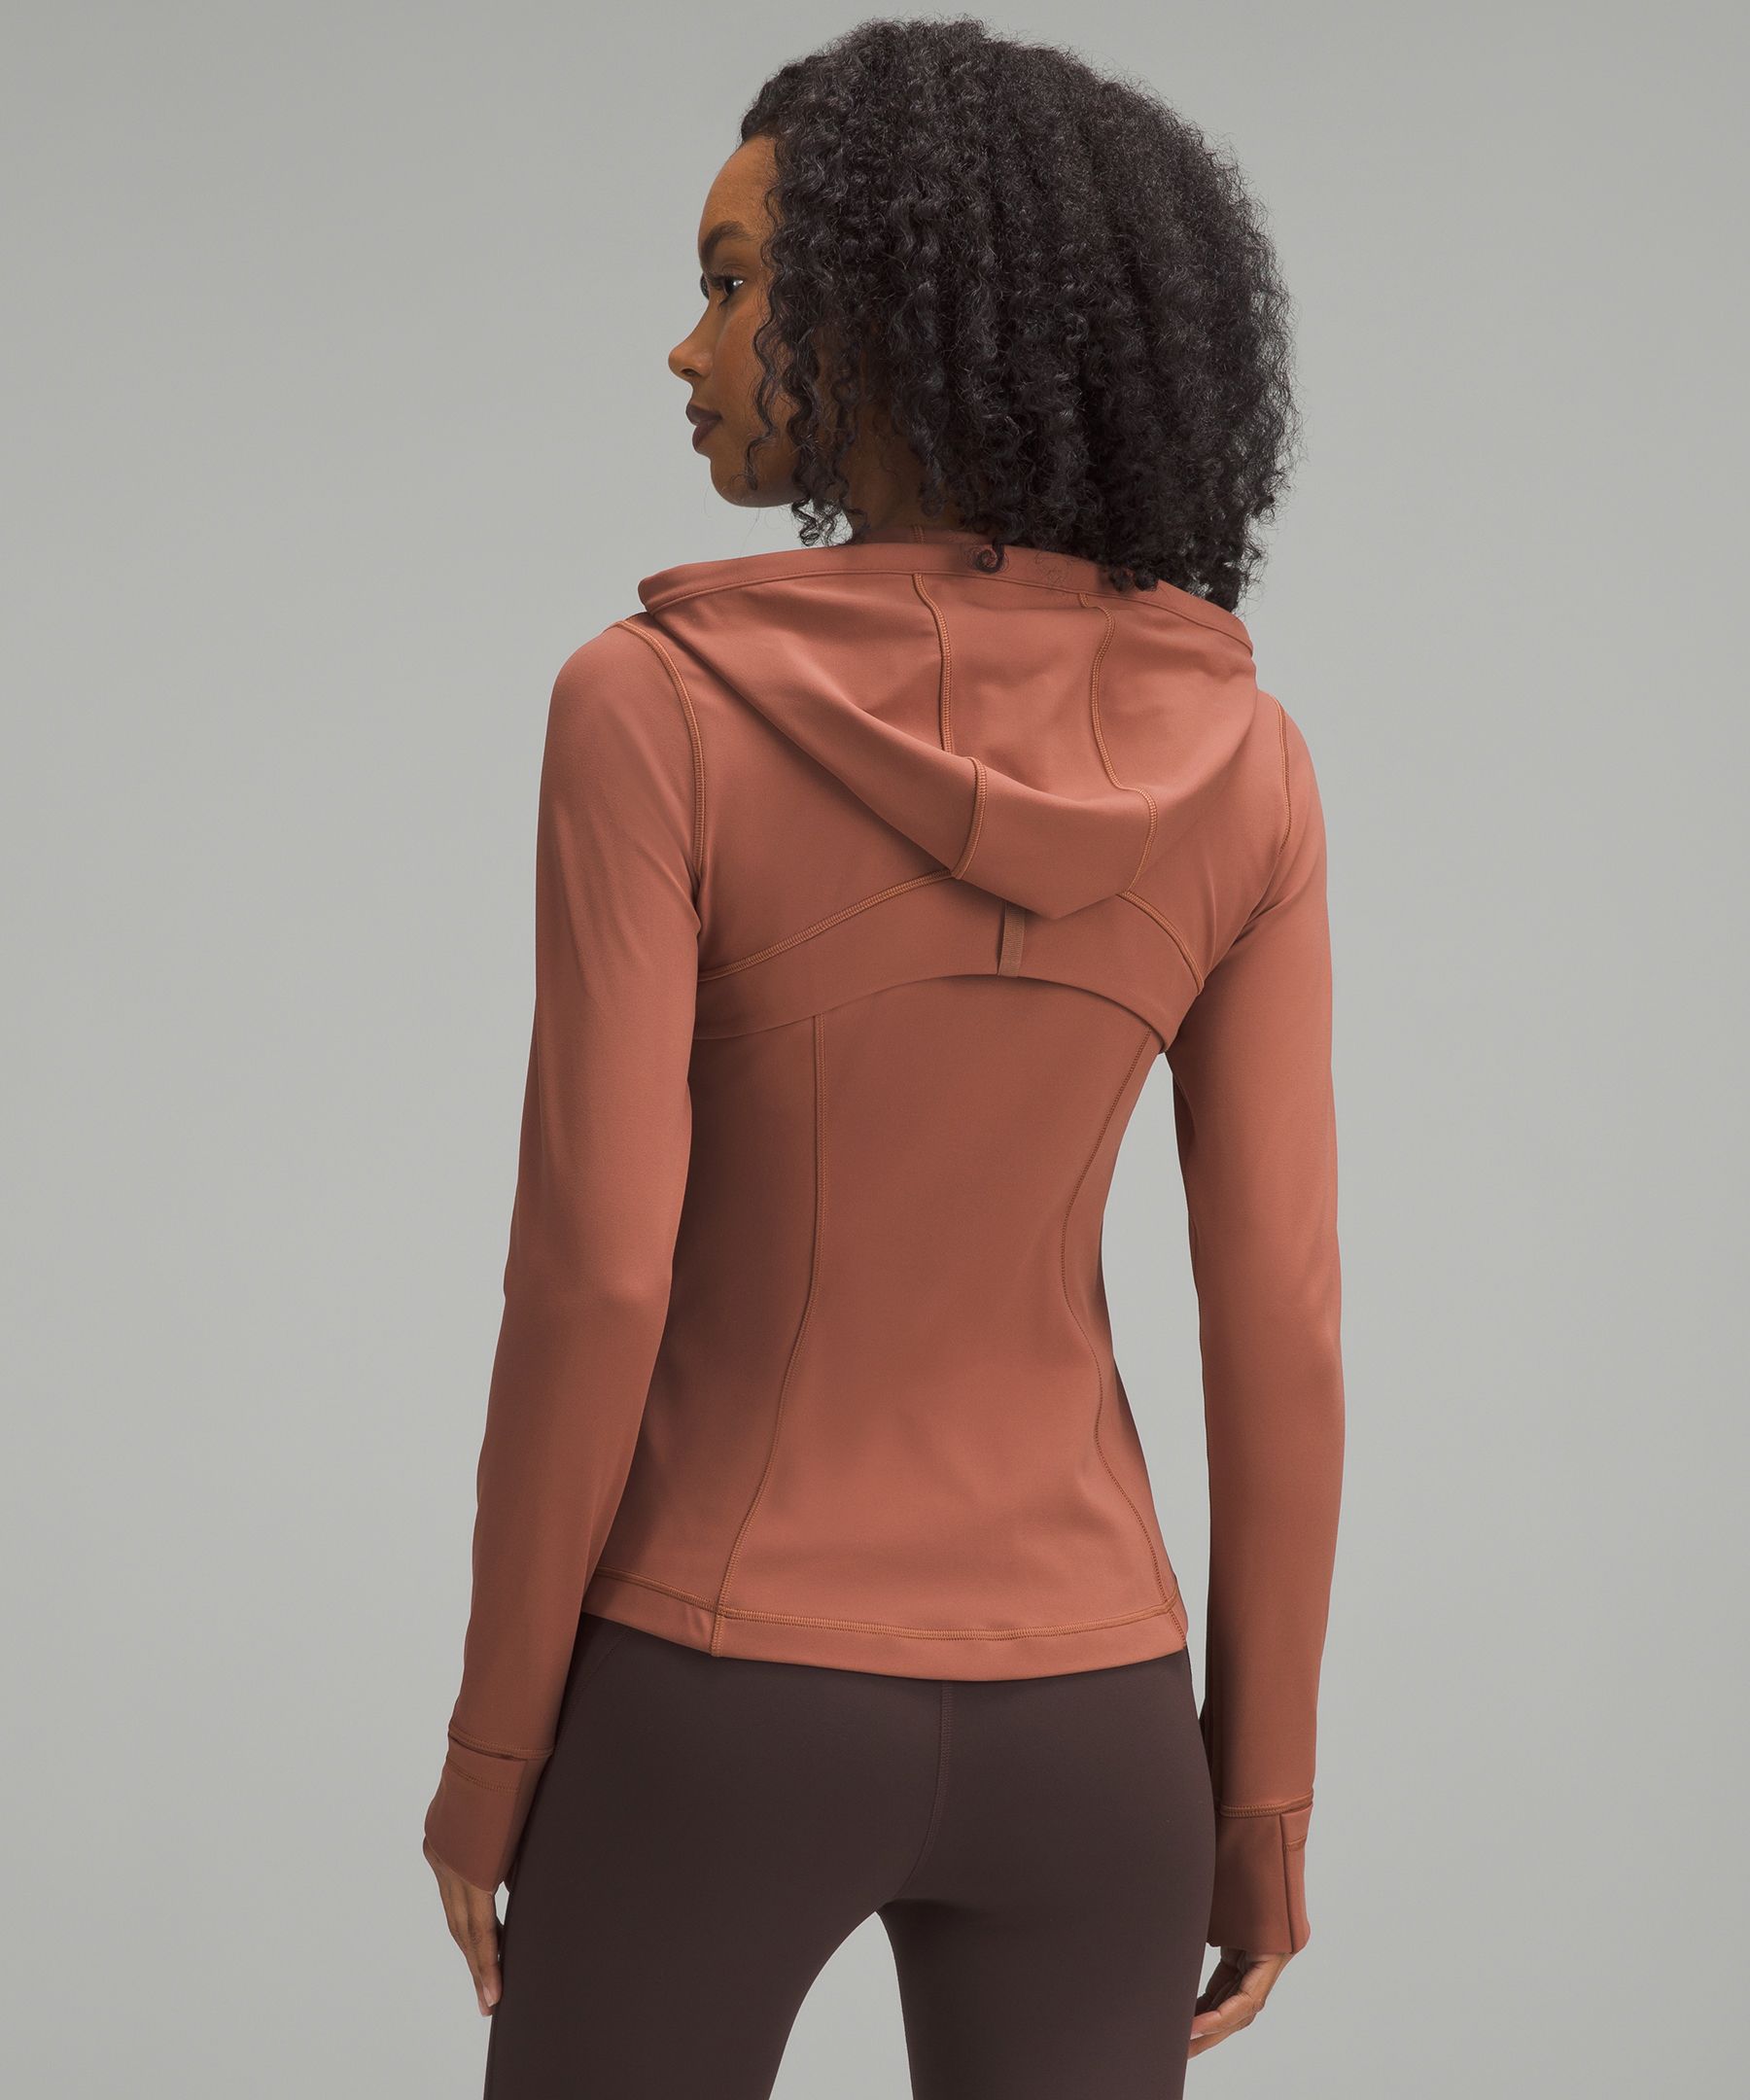 Define Hooded Jacket *Nulu | Women's Hoodies & Sweatshirts